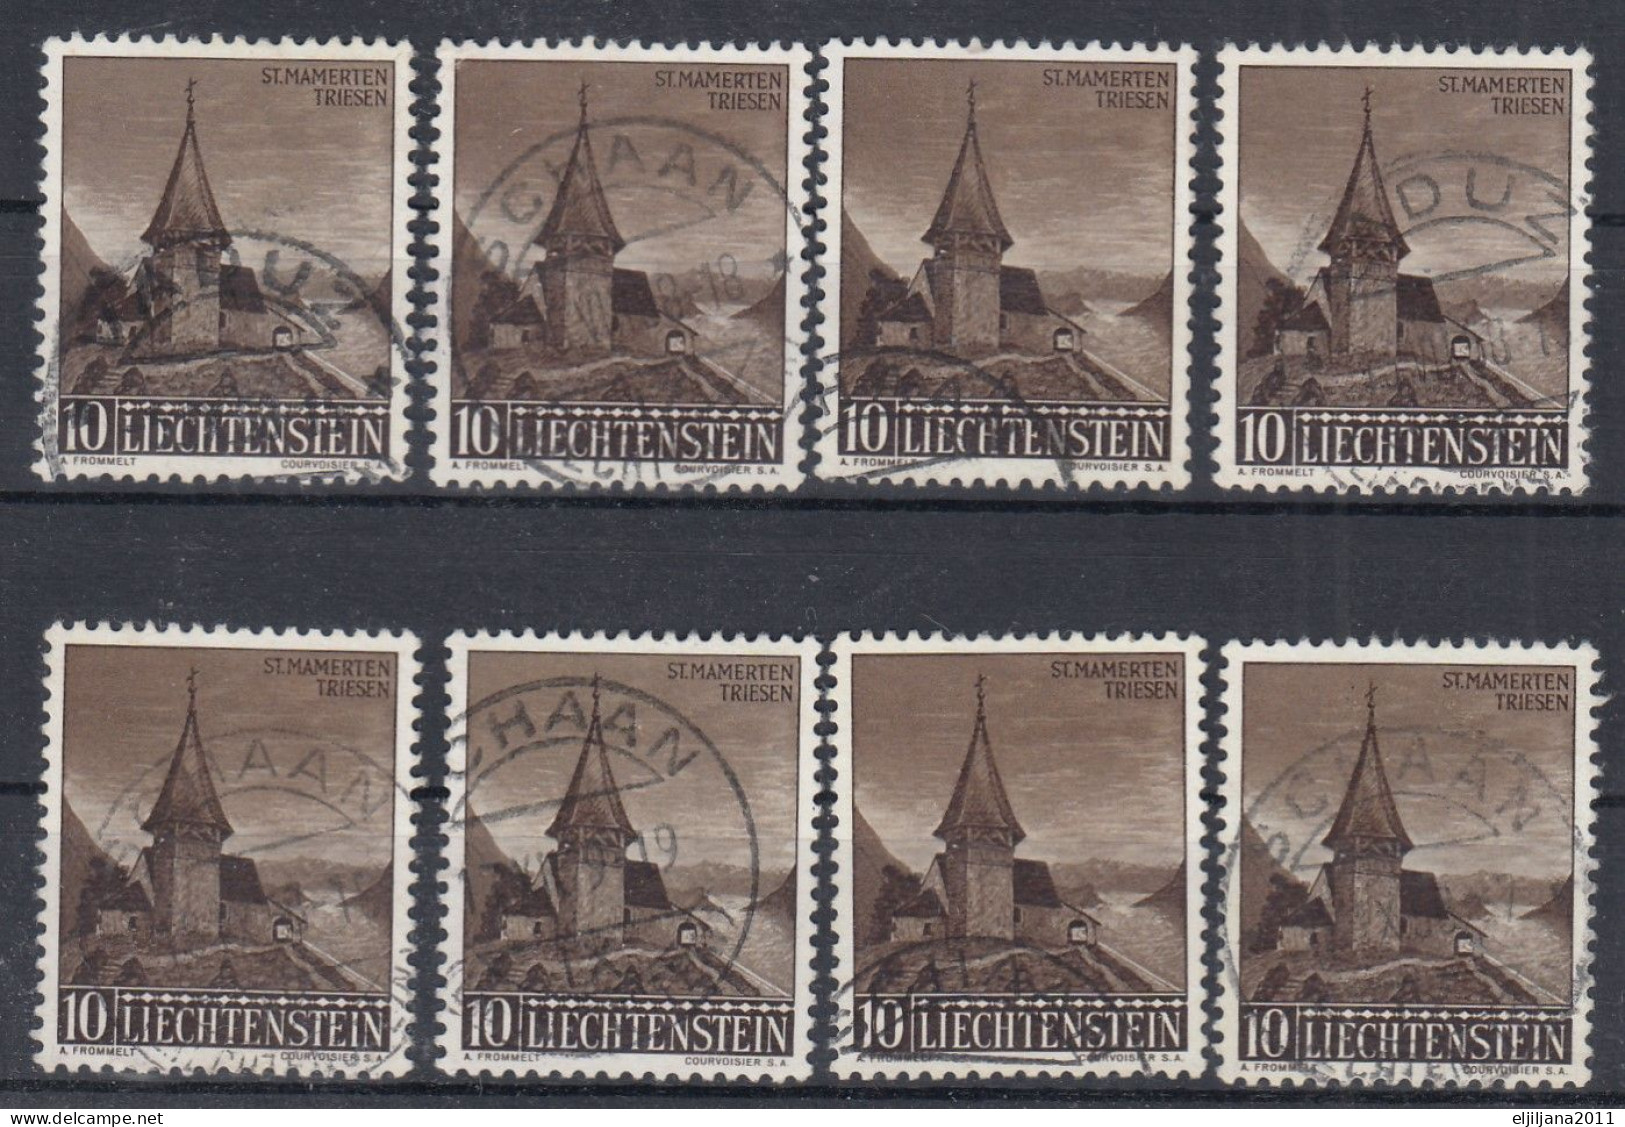 ⁕ Liechtenstein 1957 ⁕ Kapelle St. Mamerten Triesen Mi.362 ⁕ 8v Used - Used Stamps